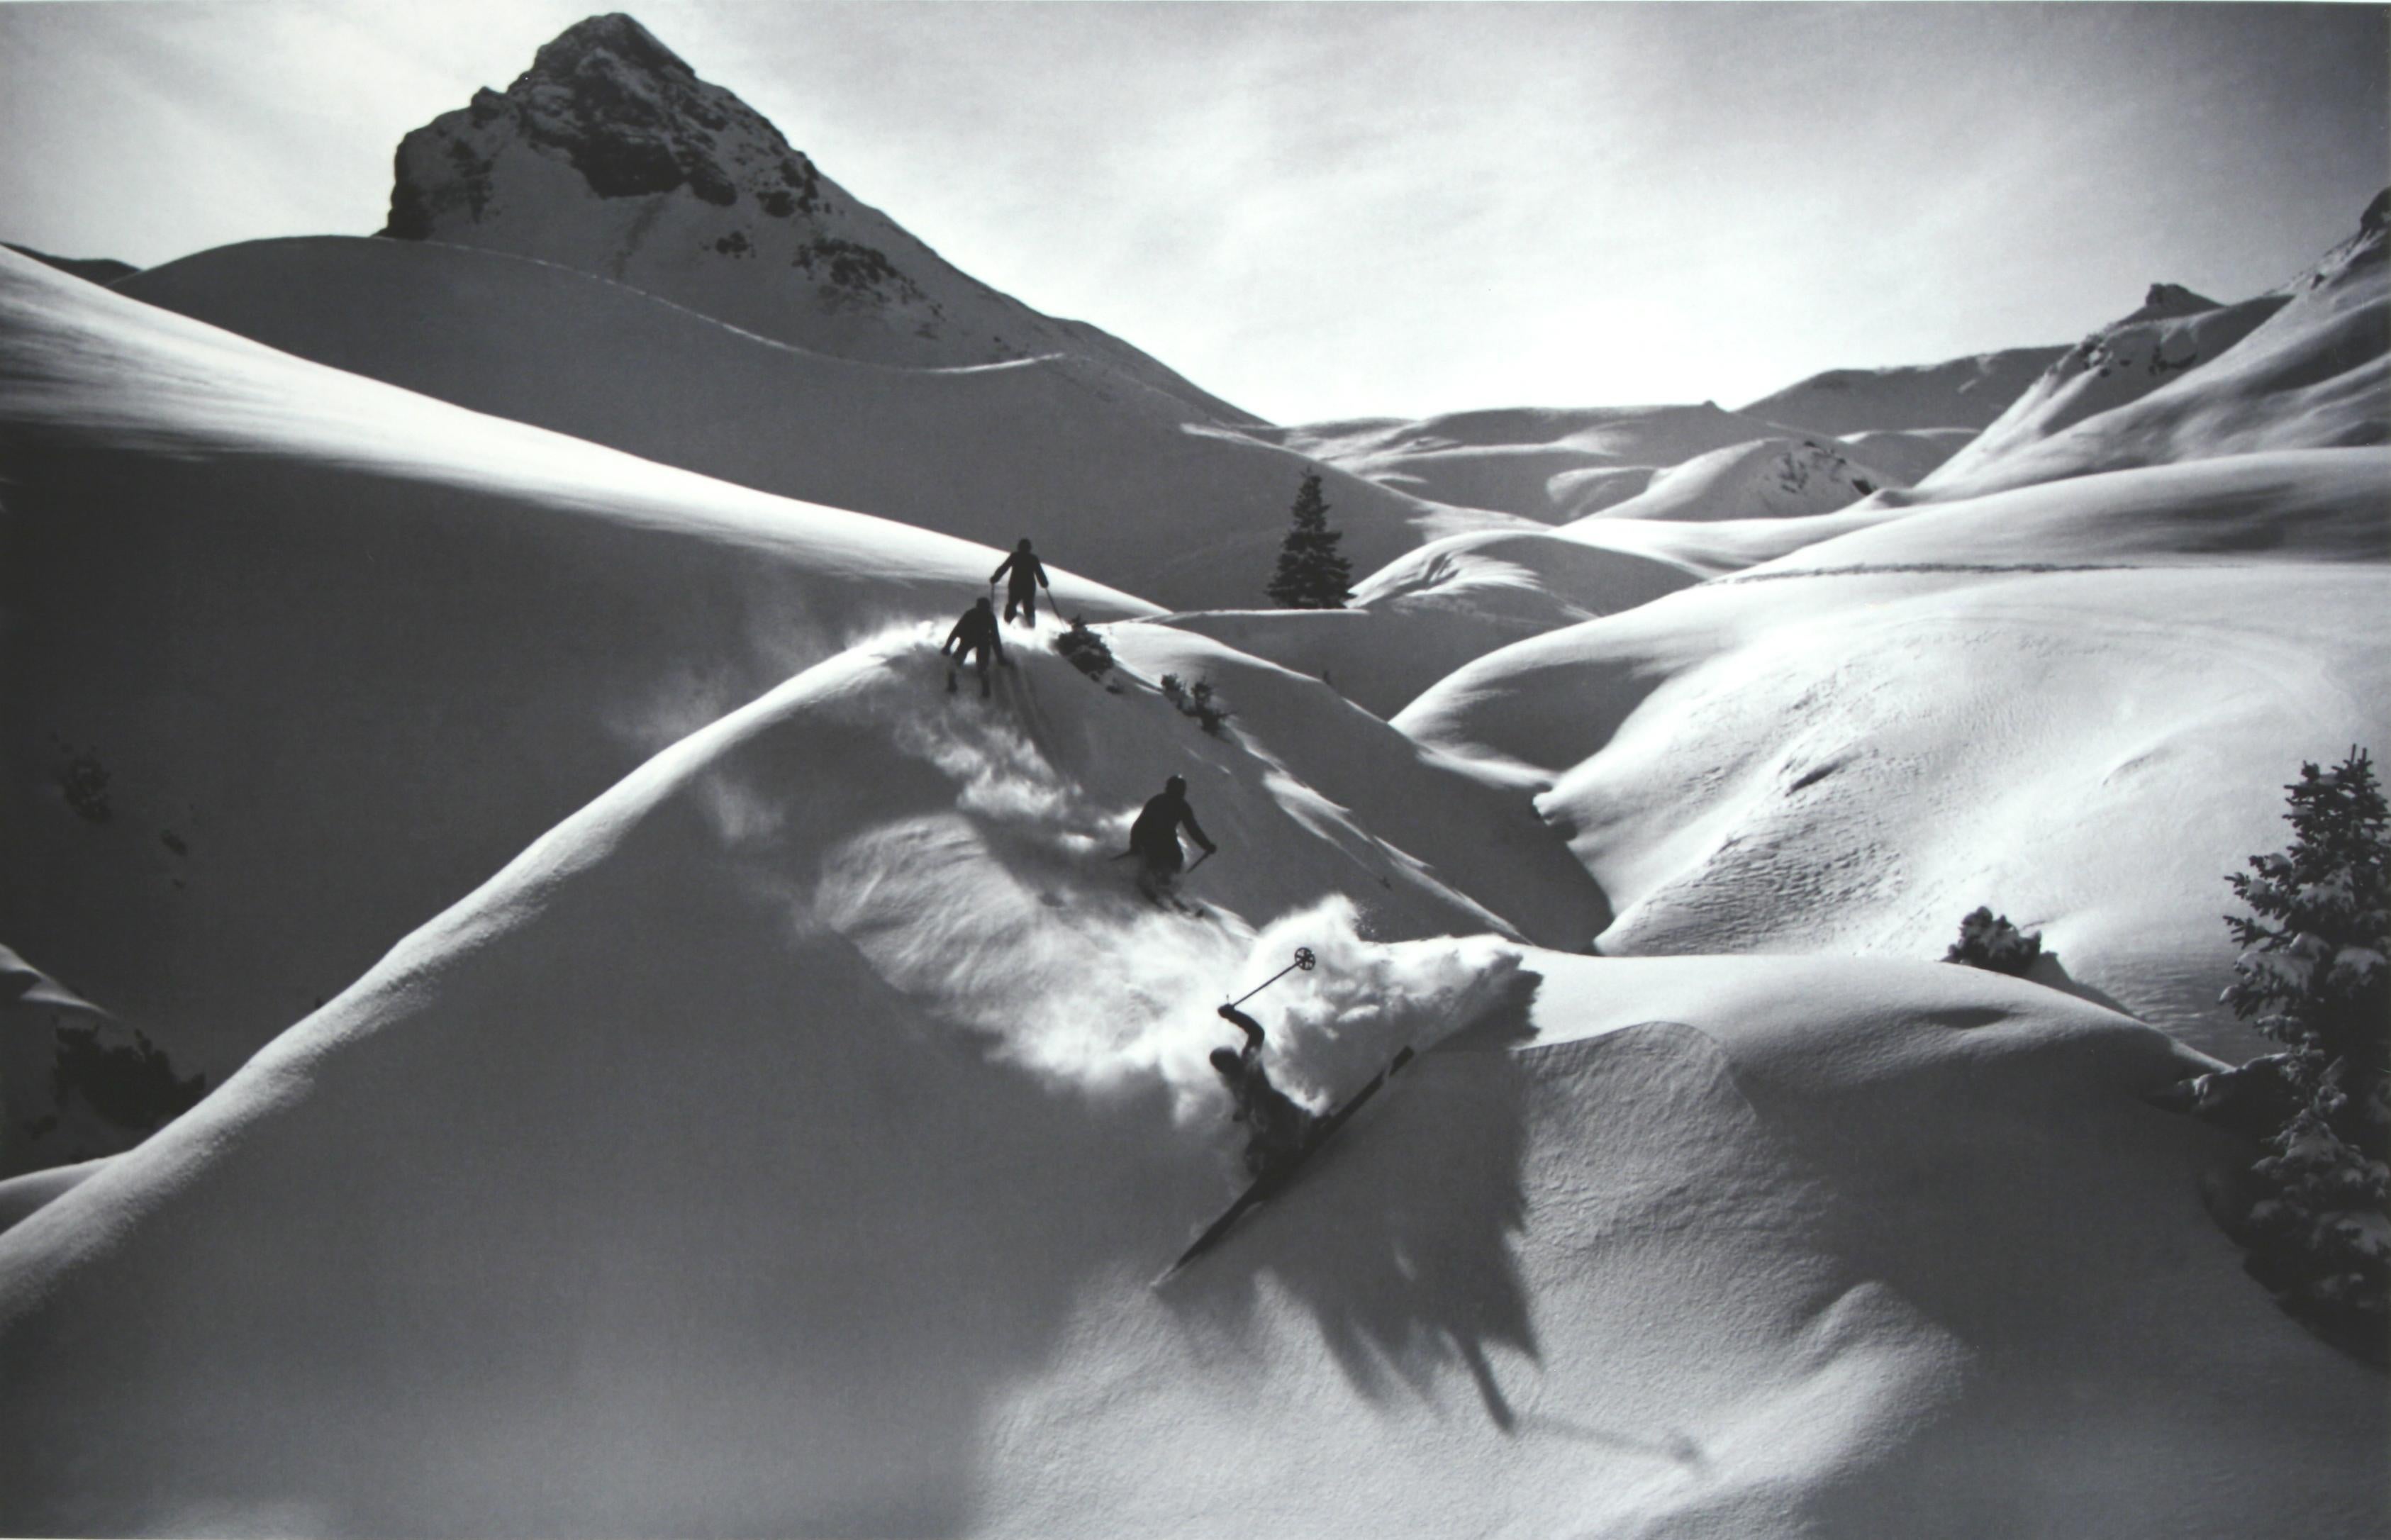 Britannique Photographie de ski alpin encadrée de style vintage, poudre vierge en vente